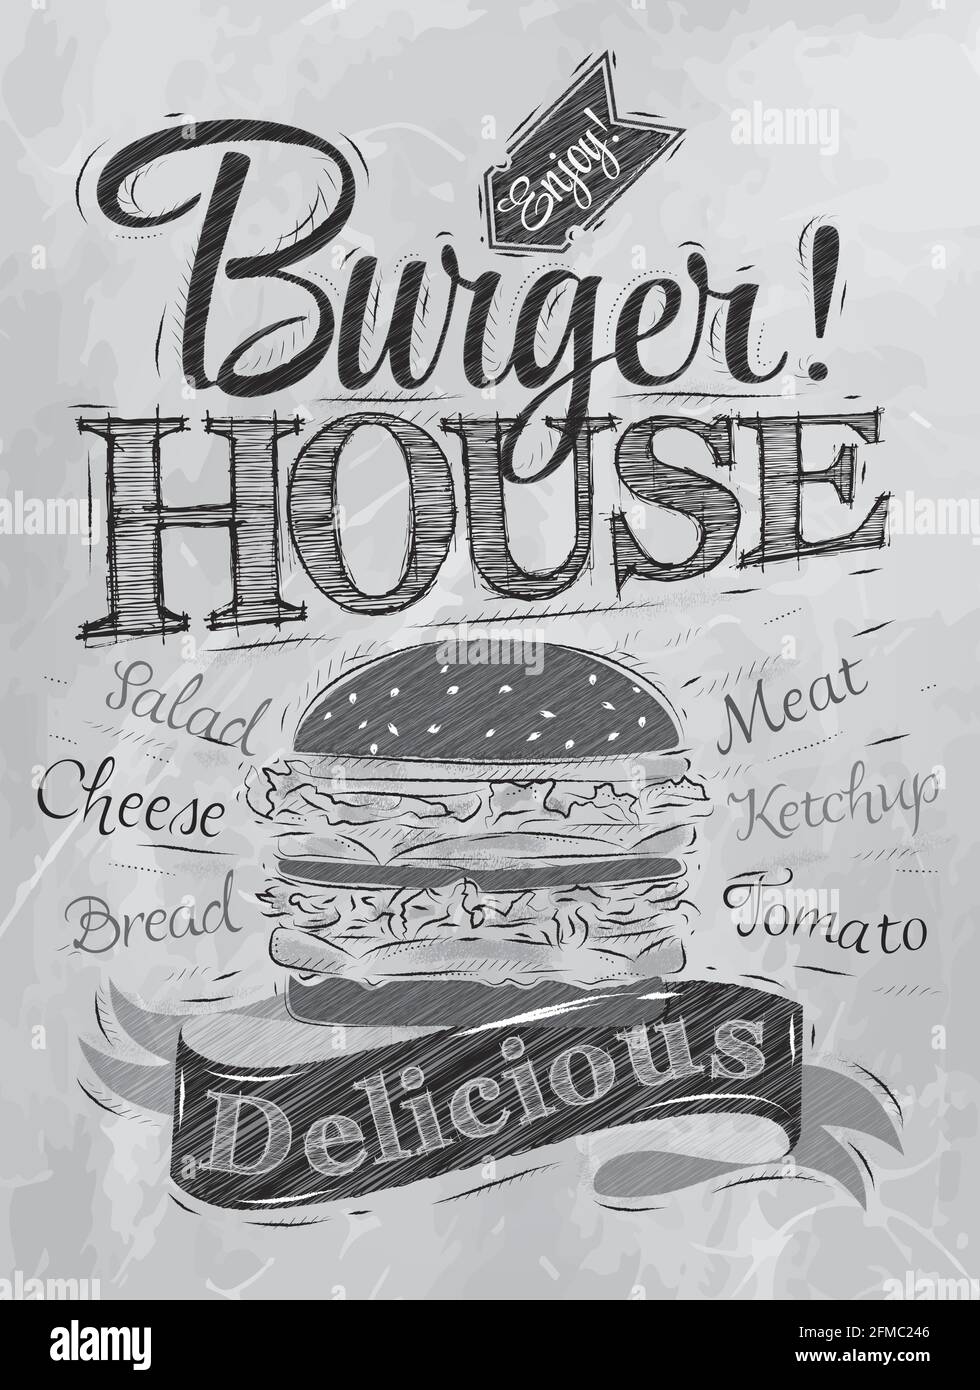 Posterbeschriftung Burger House bemalt mit einem Hamburger und Aufschriften stilisierte Zeichnung mit Aufschrift Kohle. Stock Vektor